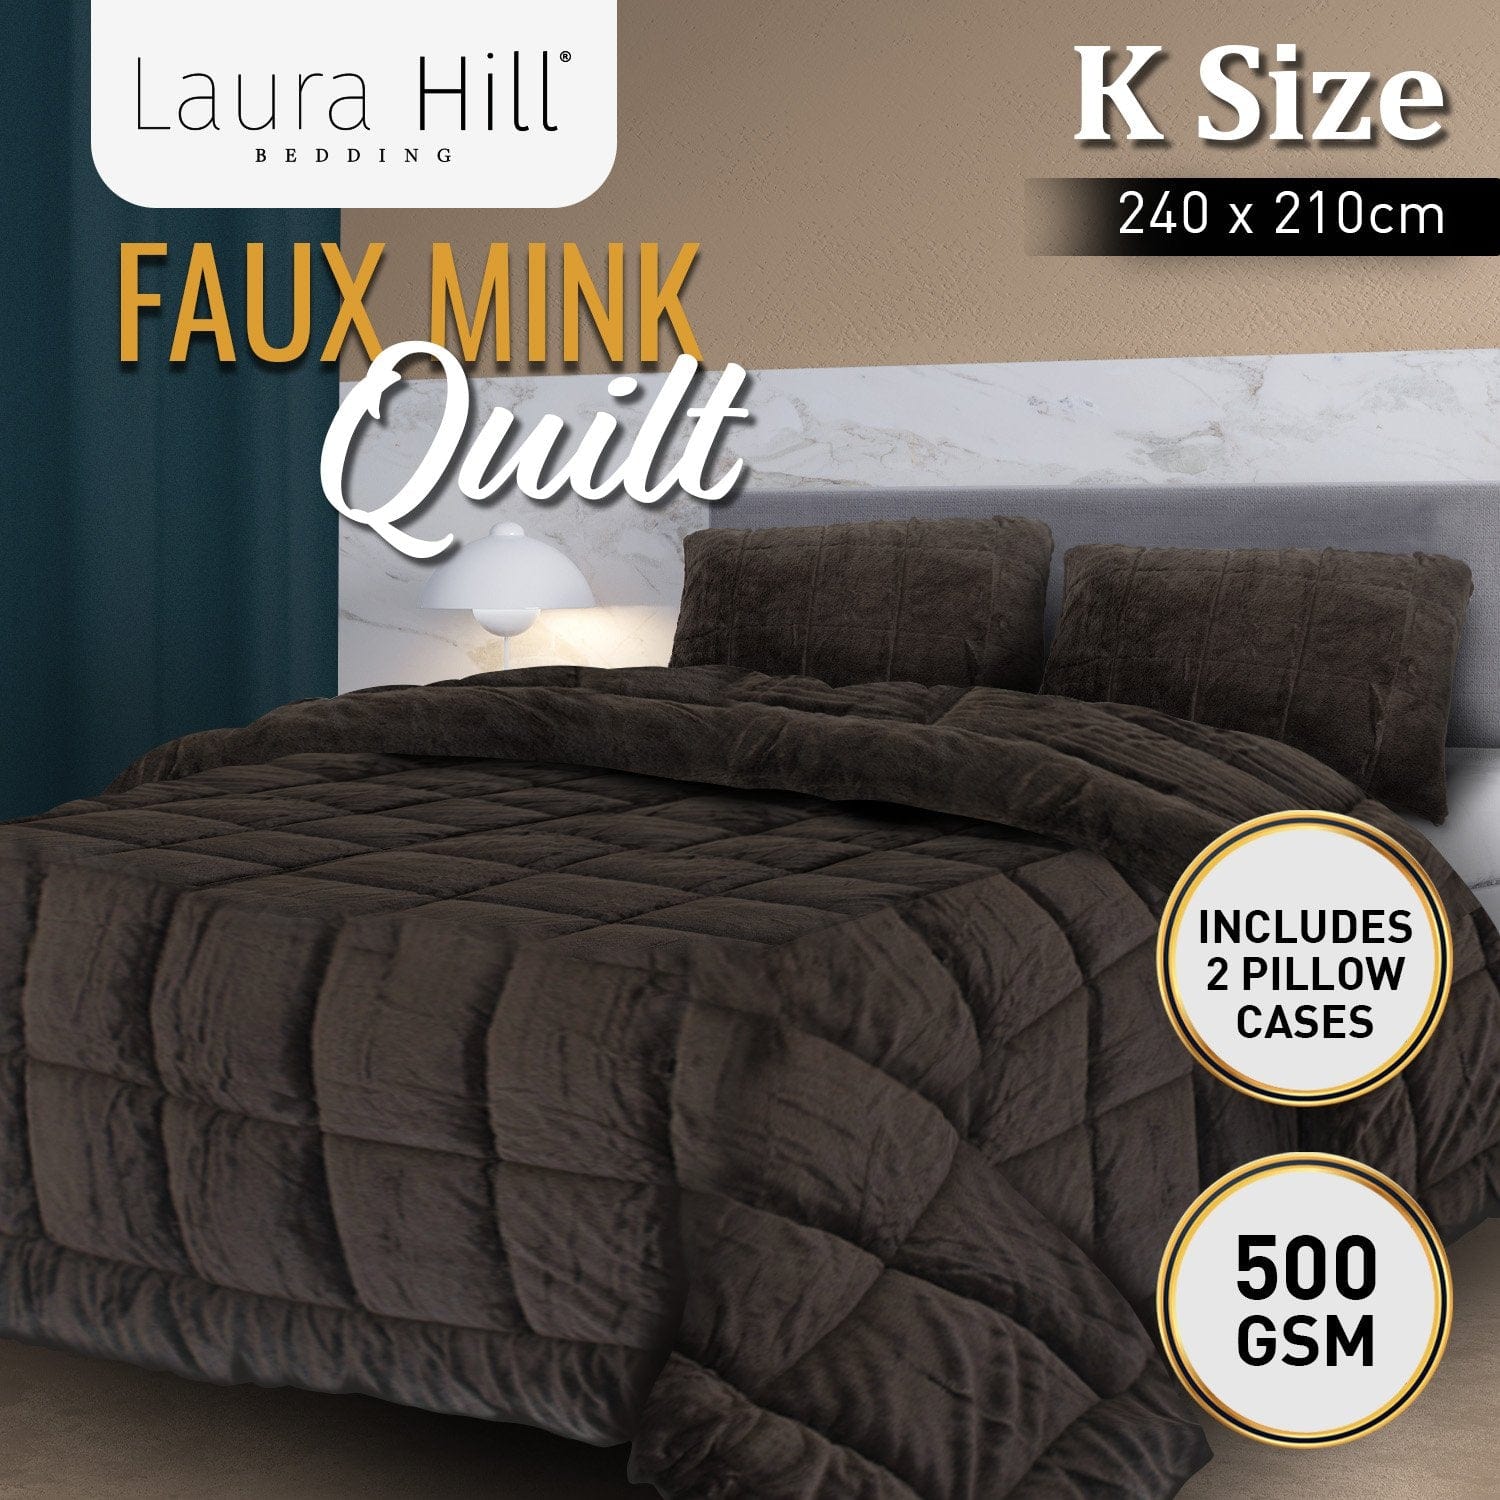 500GSM Faux Mink Quilt Comforter Doona - King